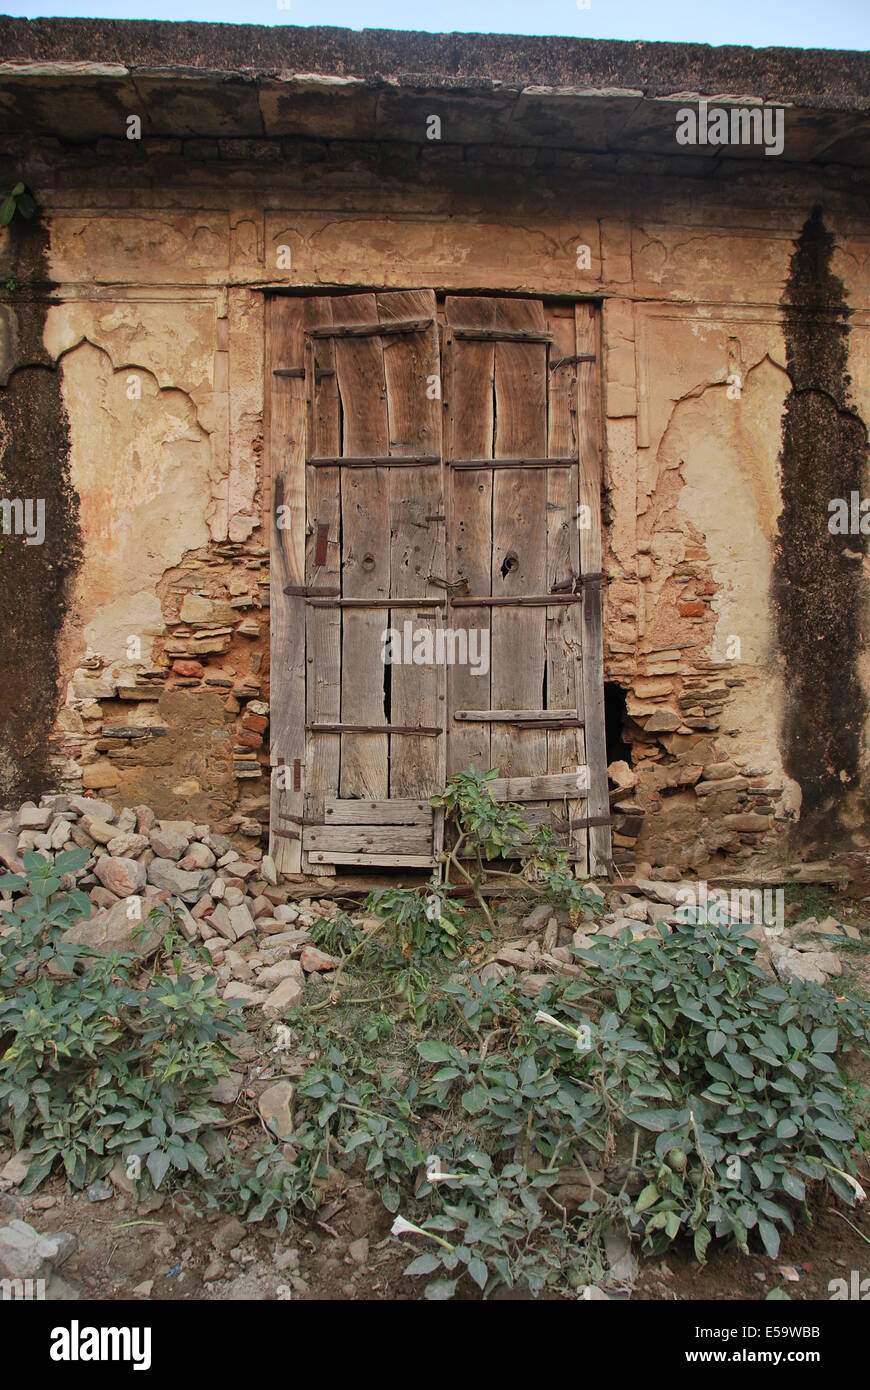 Indien. Rajasthan. Einfache Tür Dorfstruktur aufgegeben. Holz, Gips und Stein. Natürliche Farben. Pflanzen im Vordergrund. Stockfoto